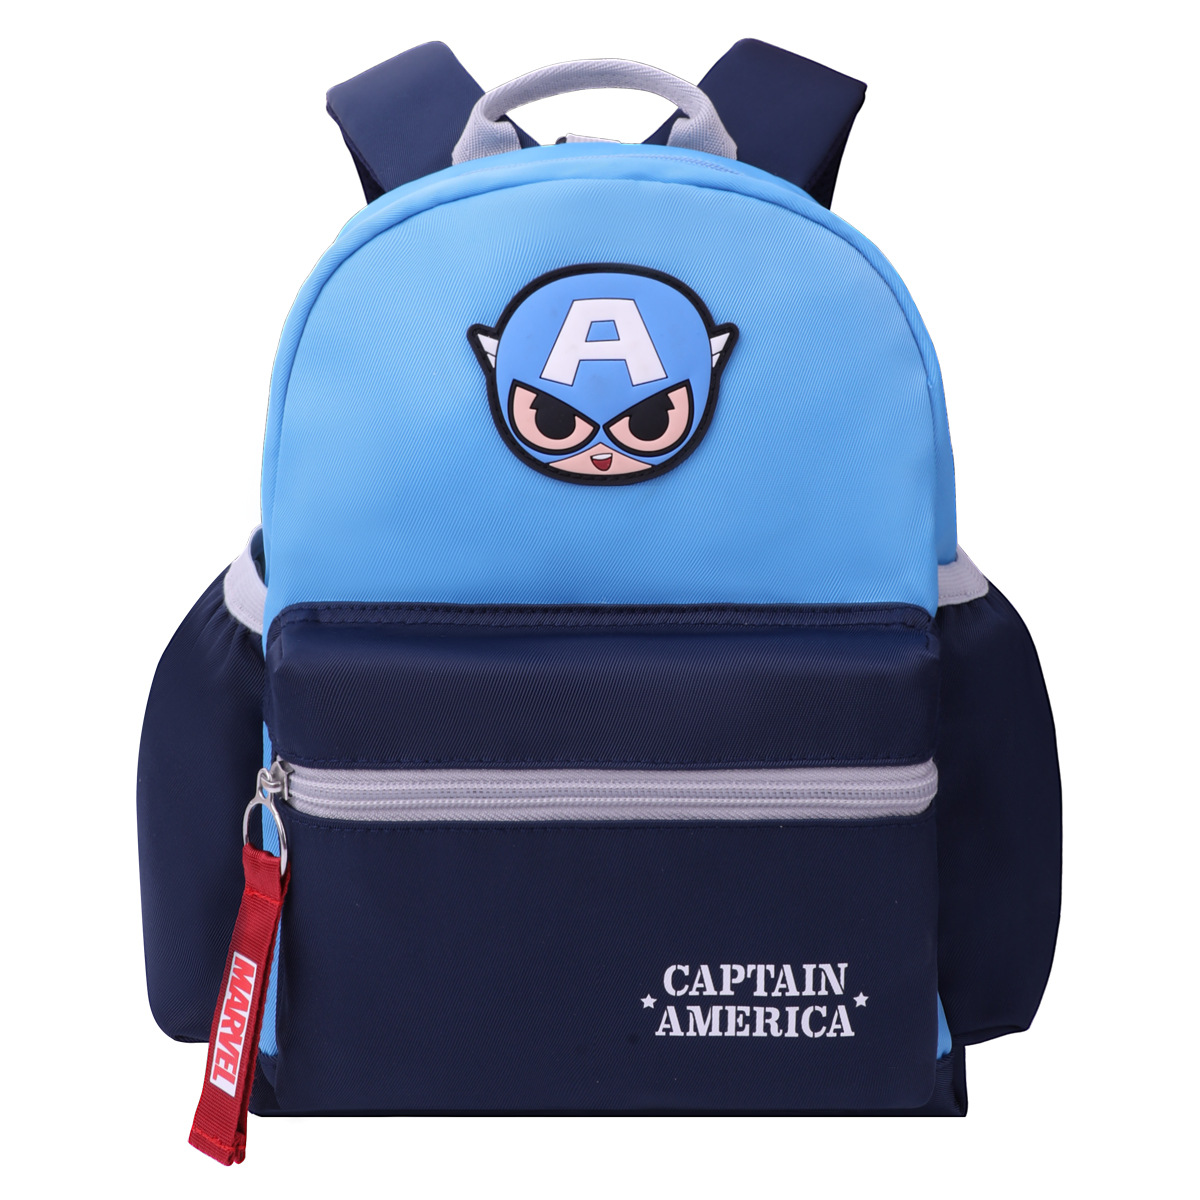 Ba5946 Disney Children's Backpack Boy Cartoon Backpack School Season Kindergarten Baby Lightweight Schoolbag